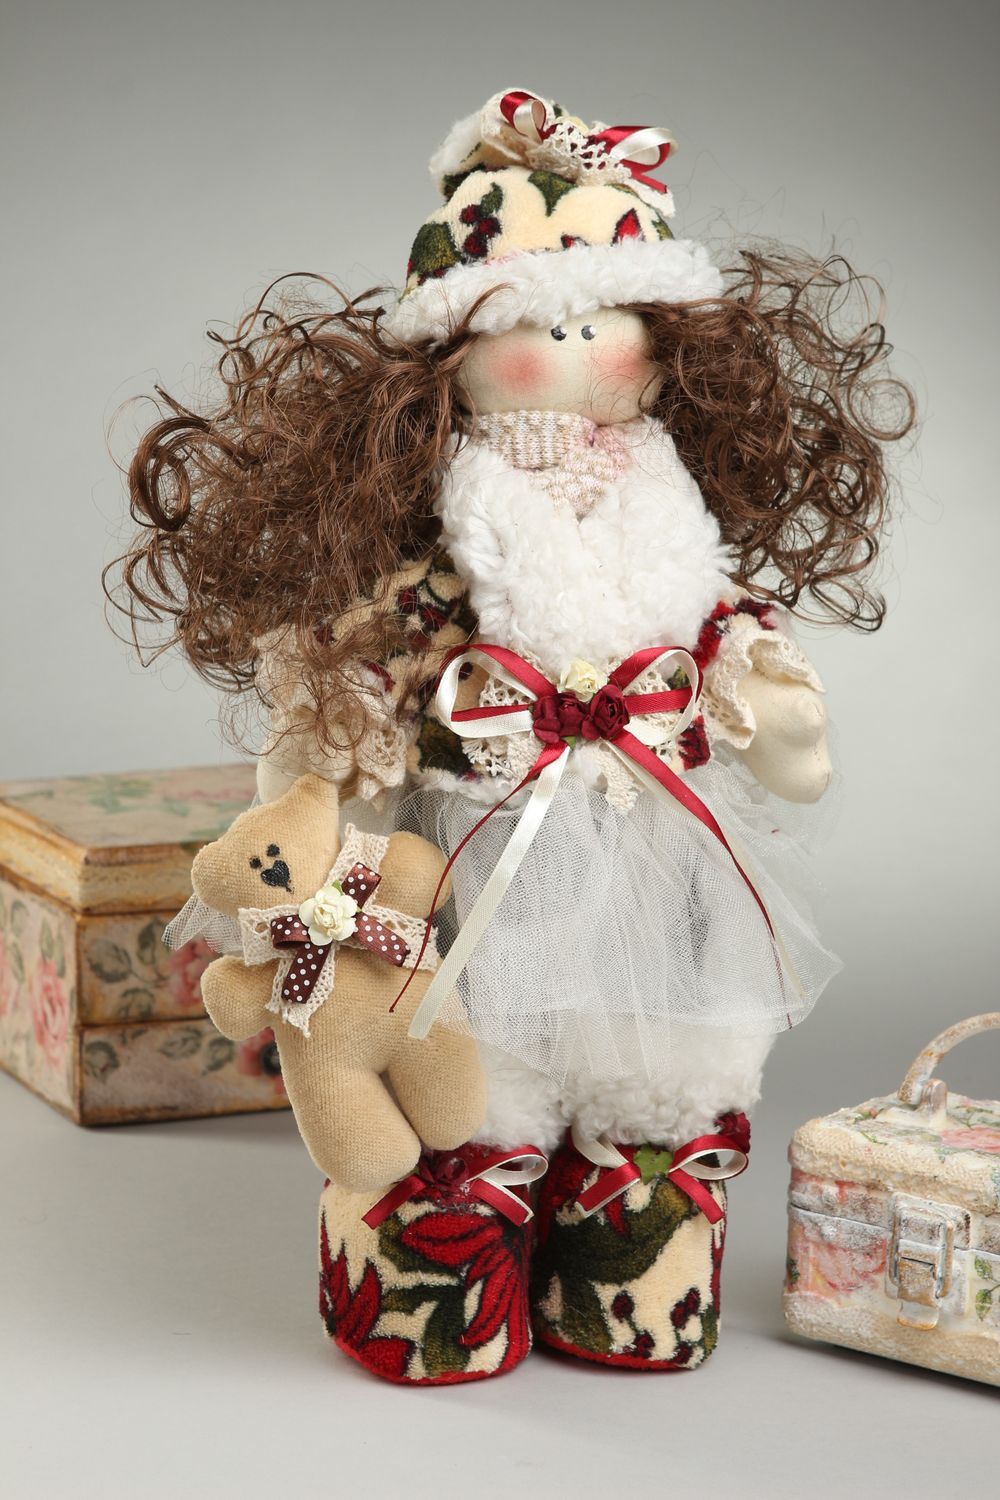 Handmade doll handmade rag doll interior dolls soft toys for children baby gift photo 1